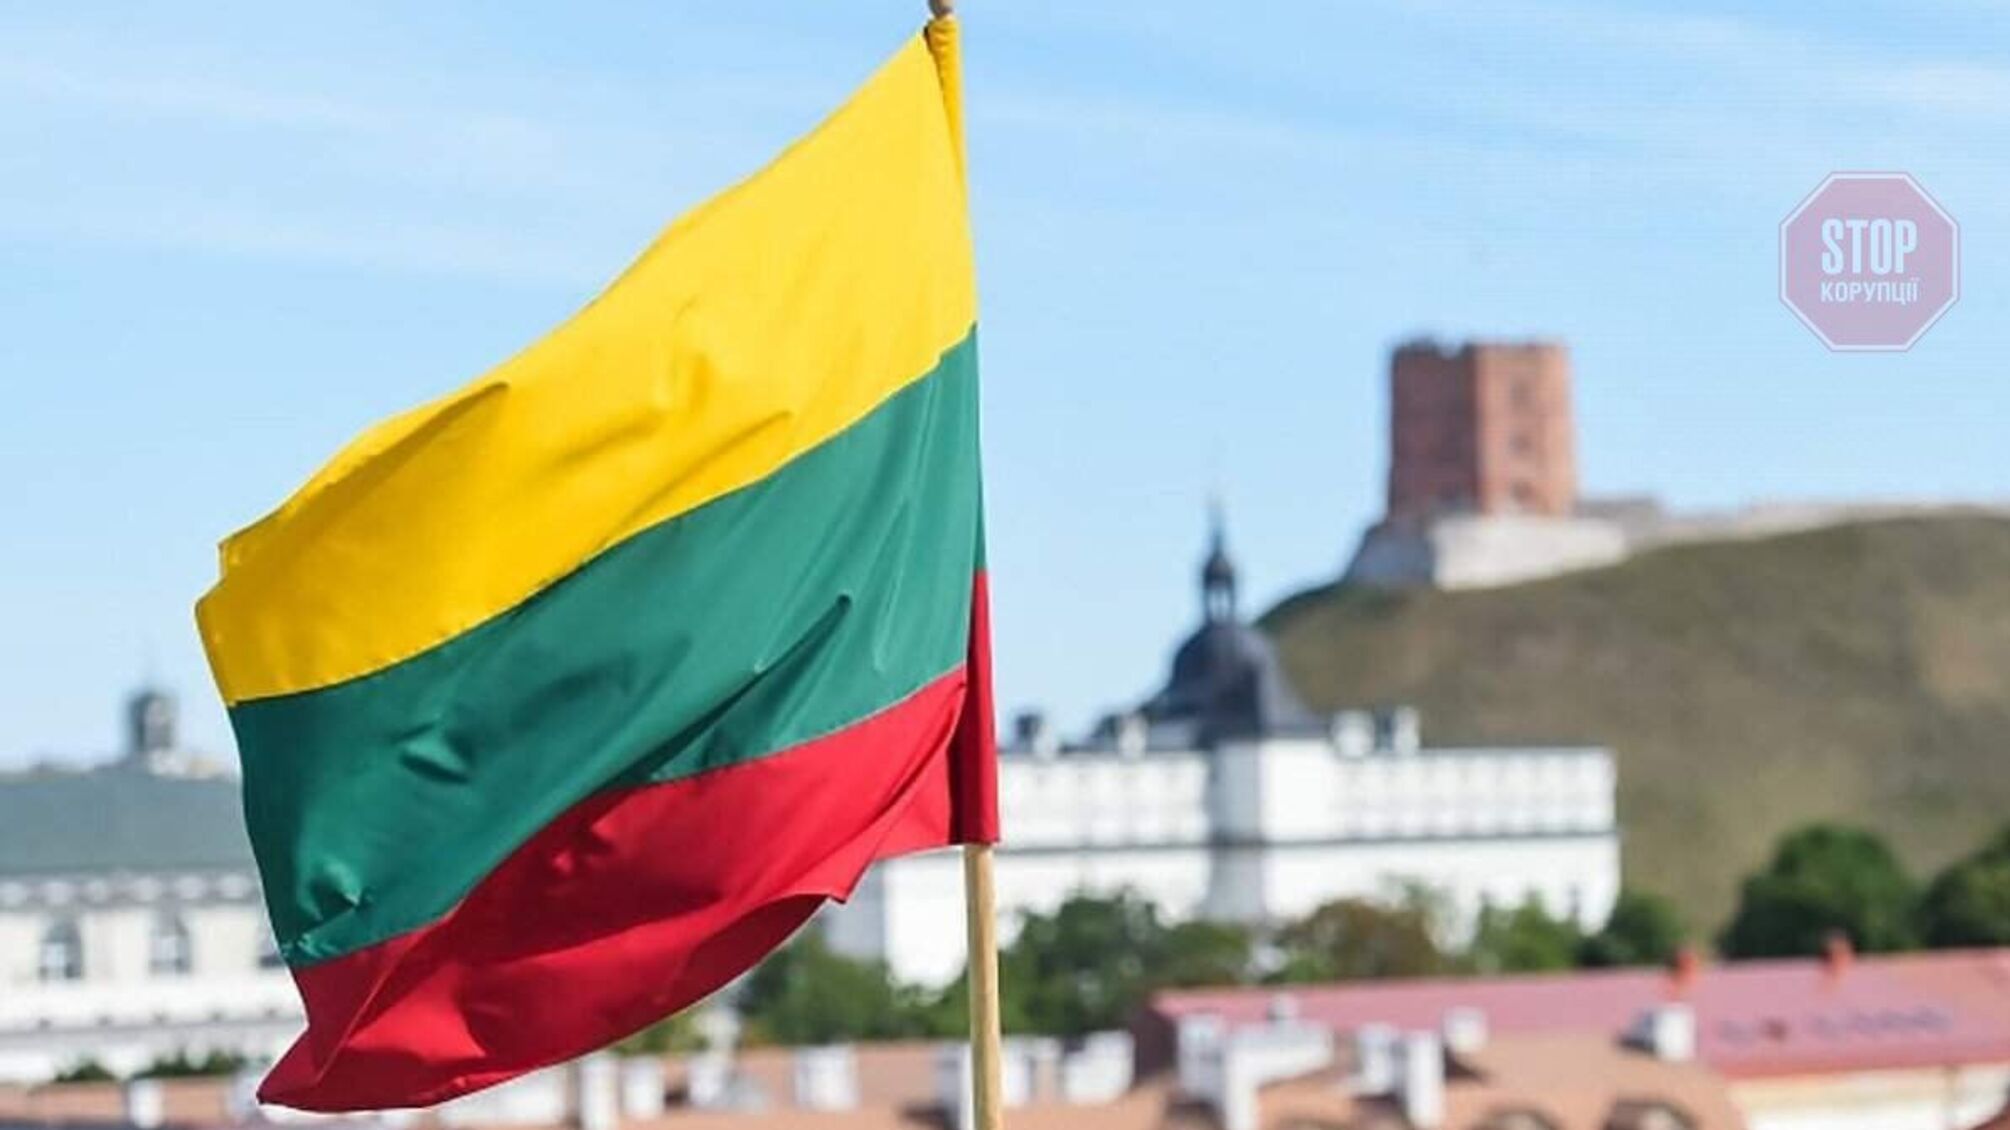 Литва высылает из страны большинство белорусских дипломатов